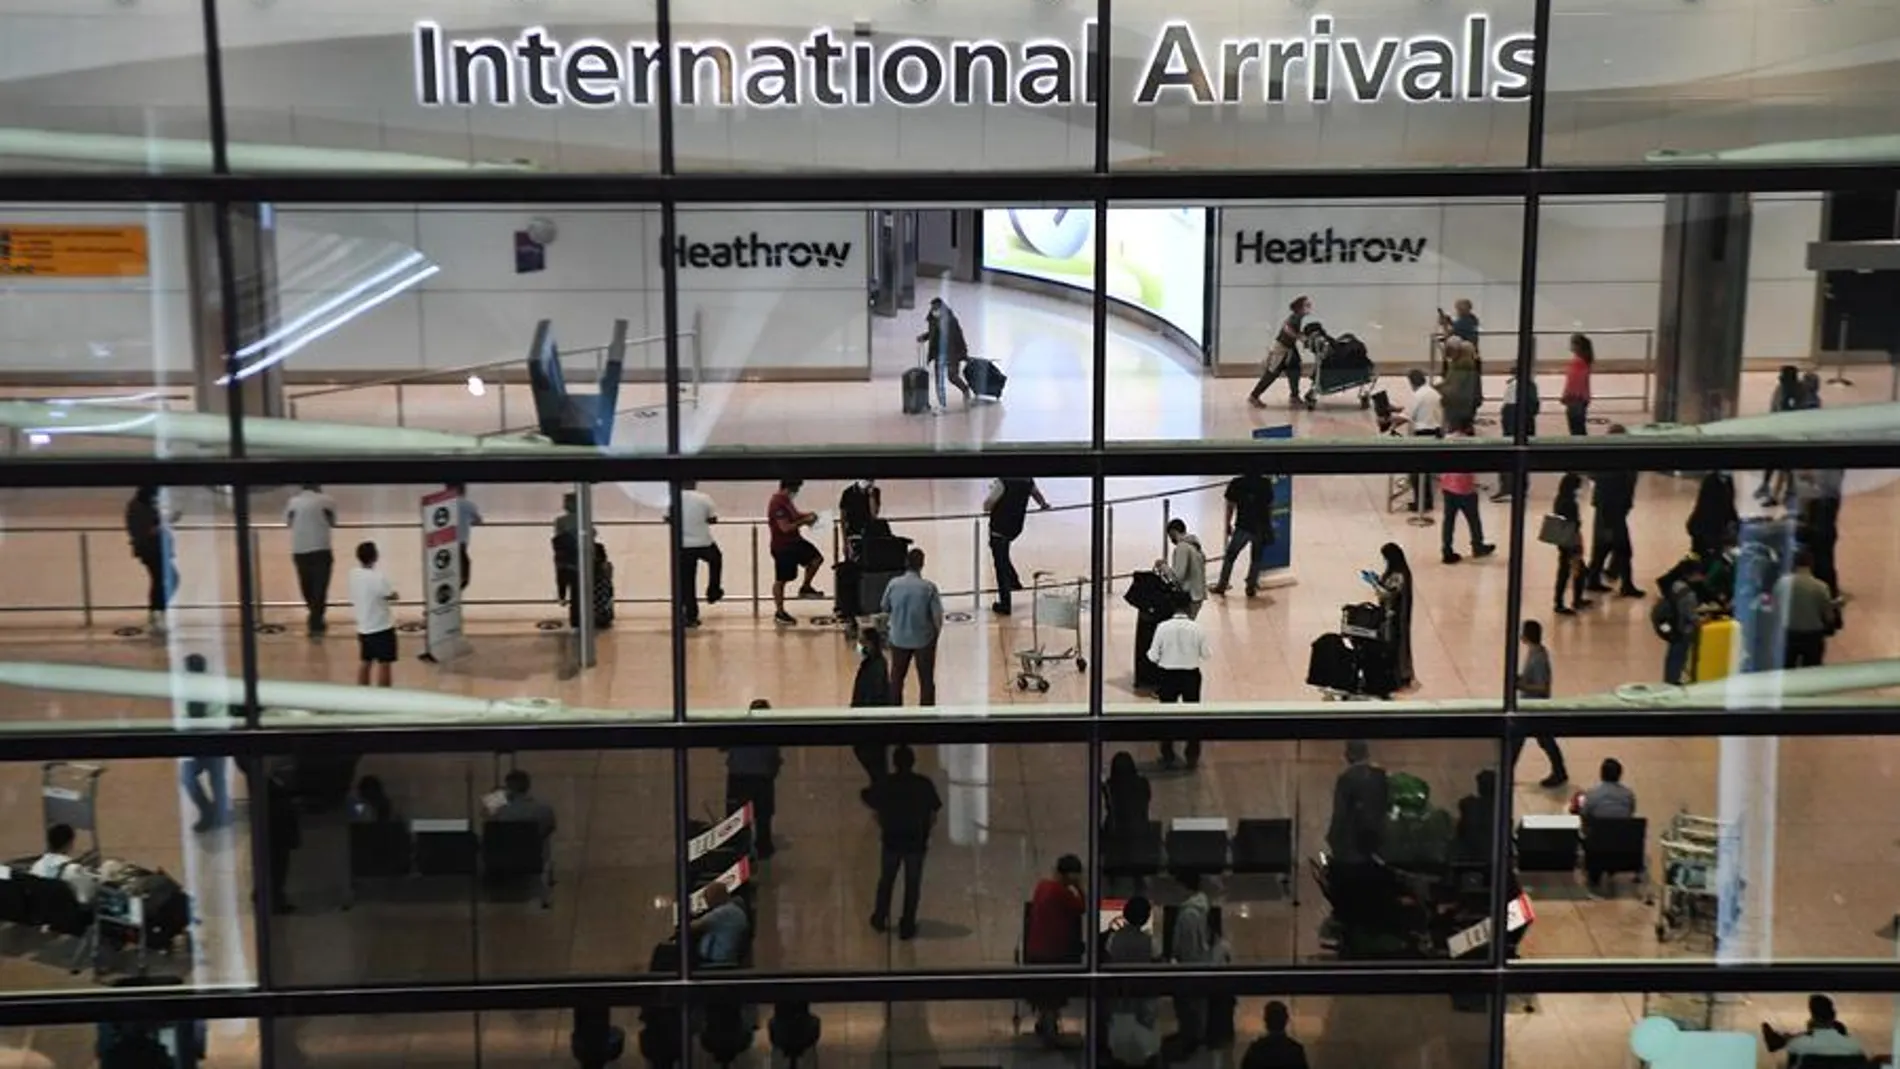 Terminal de llegadas internacionaes del aeropuerto de Heathrow.